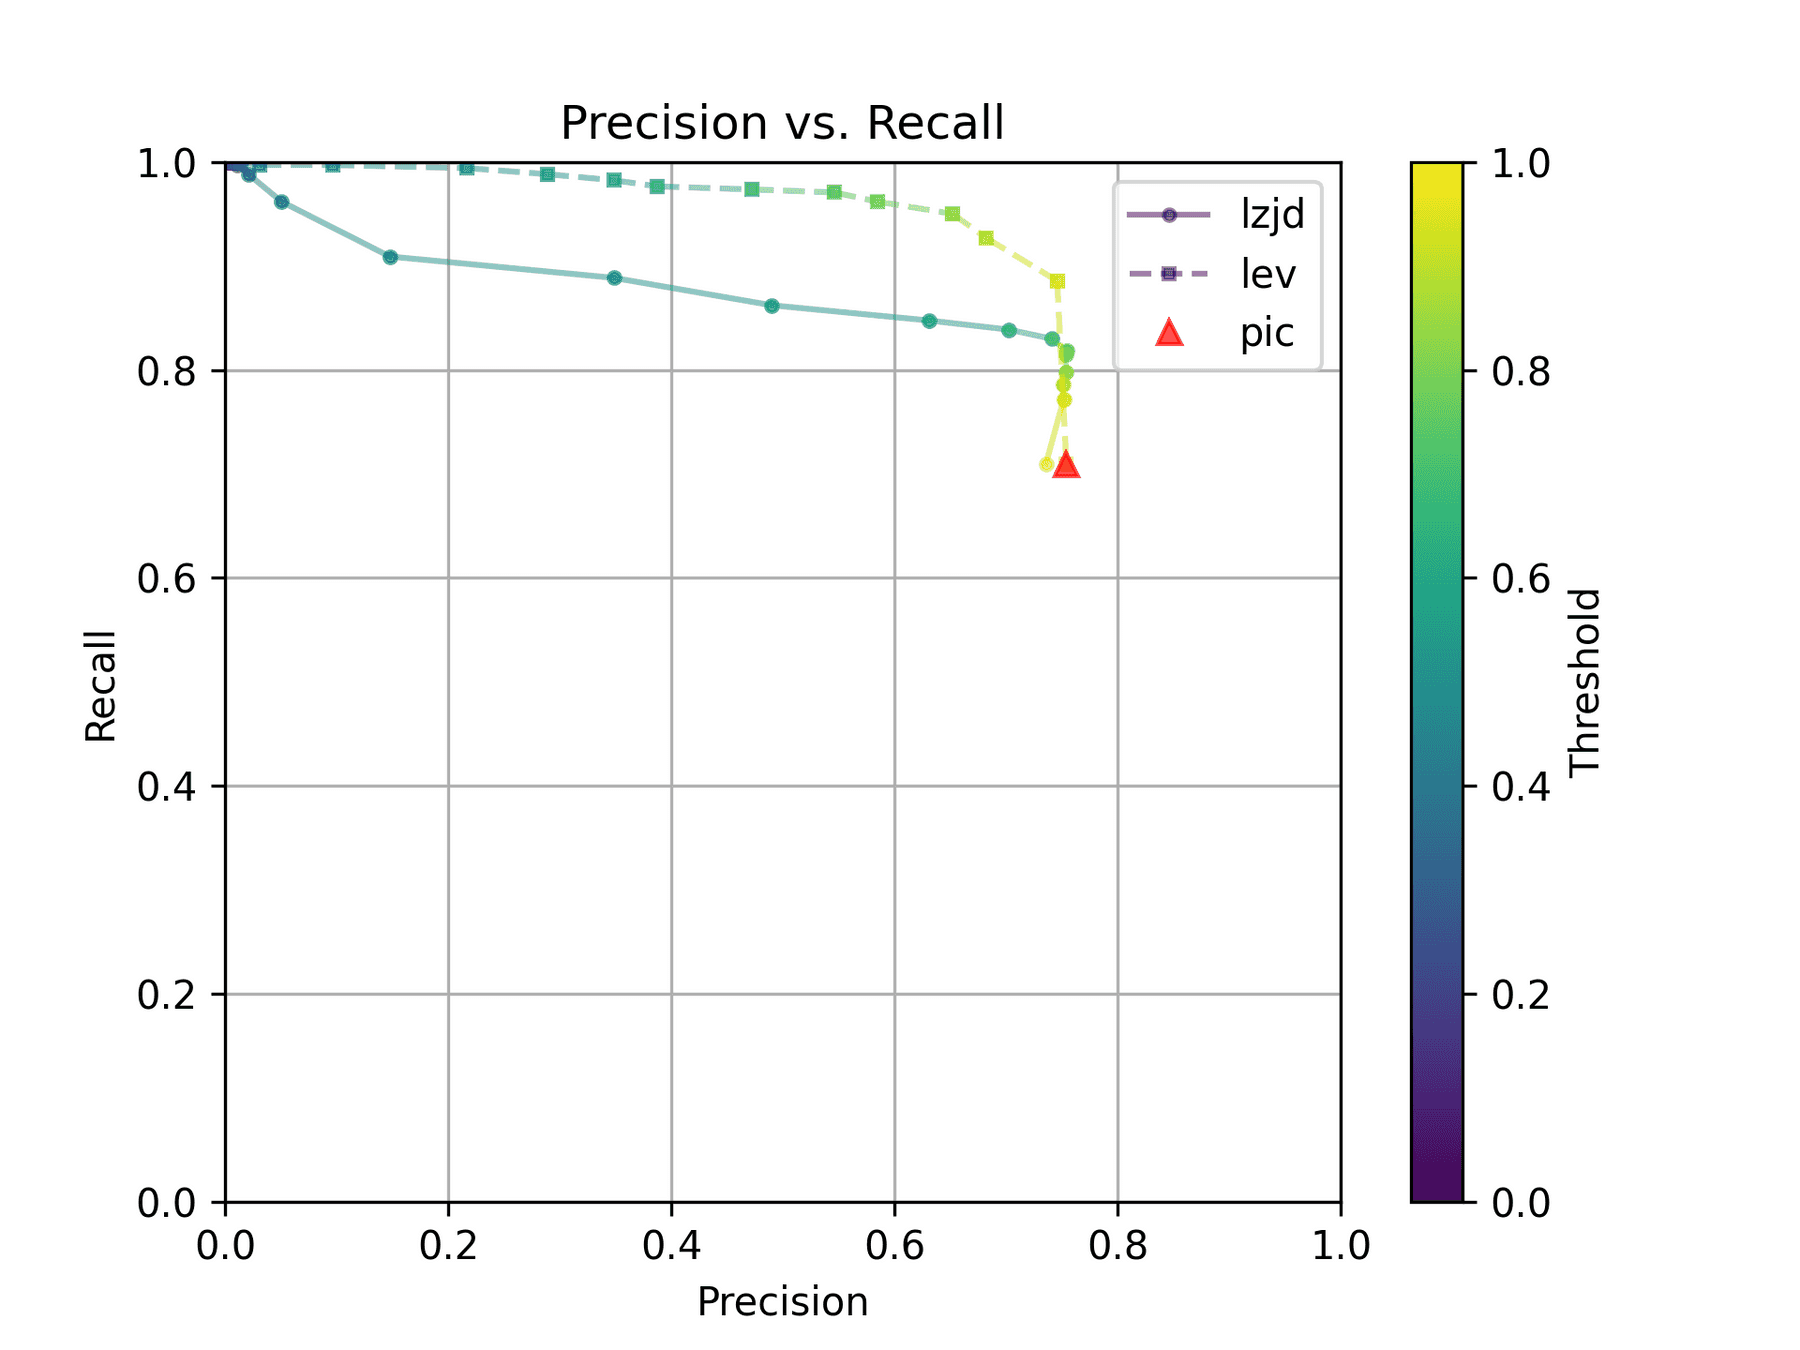 Precision vs. Recall plot for "openssl 1.1.1 vs 1.1.1w"